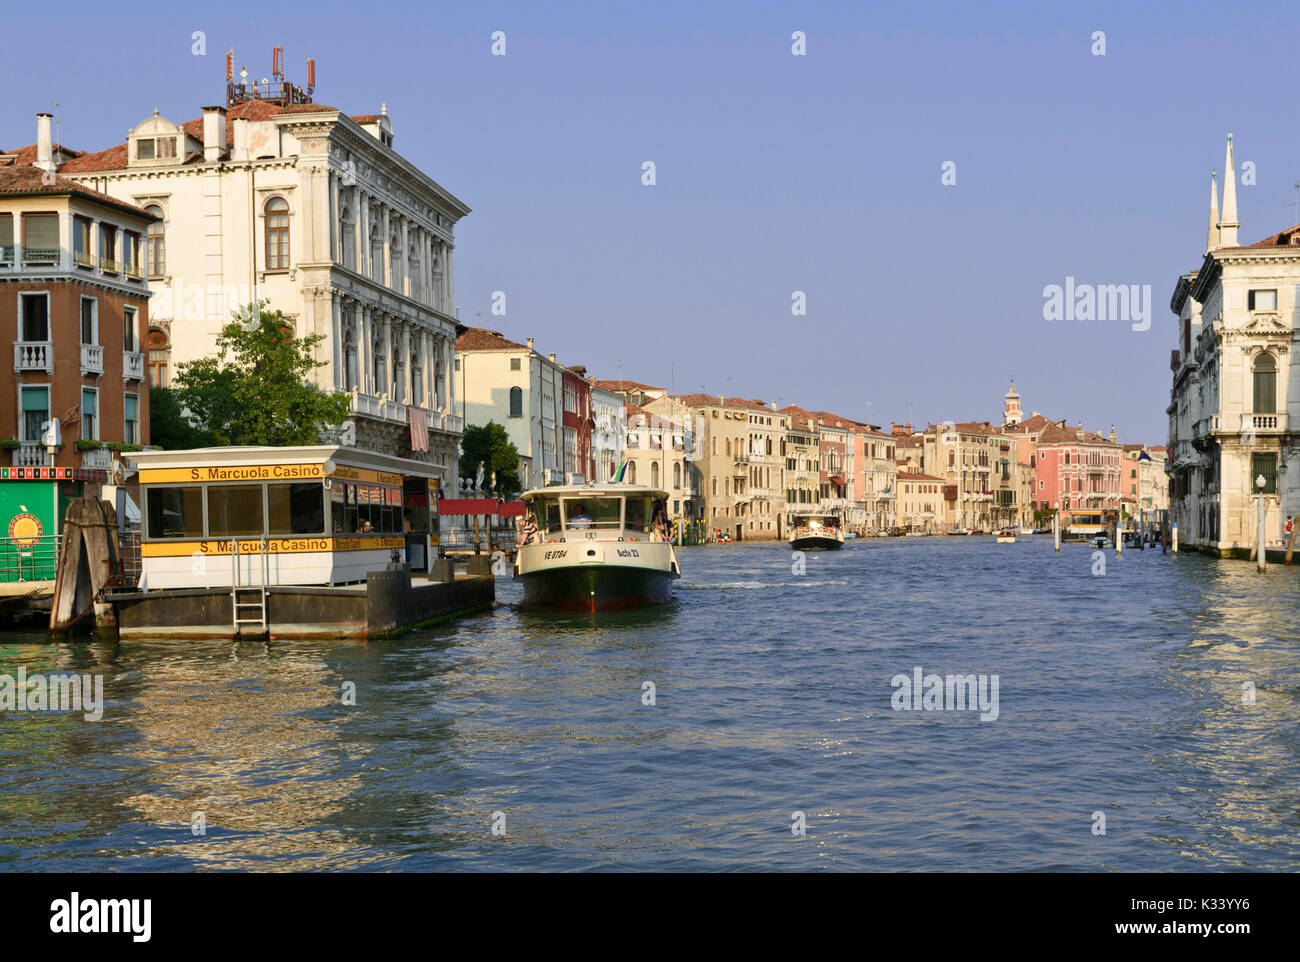 Vaporetto auf dem Canal Grande, Venedig, Italien Stockfoto